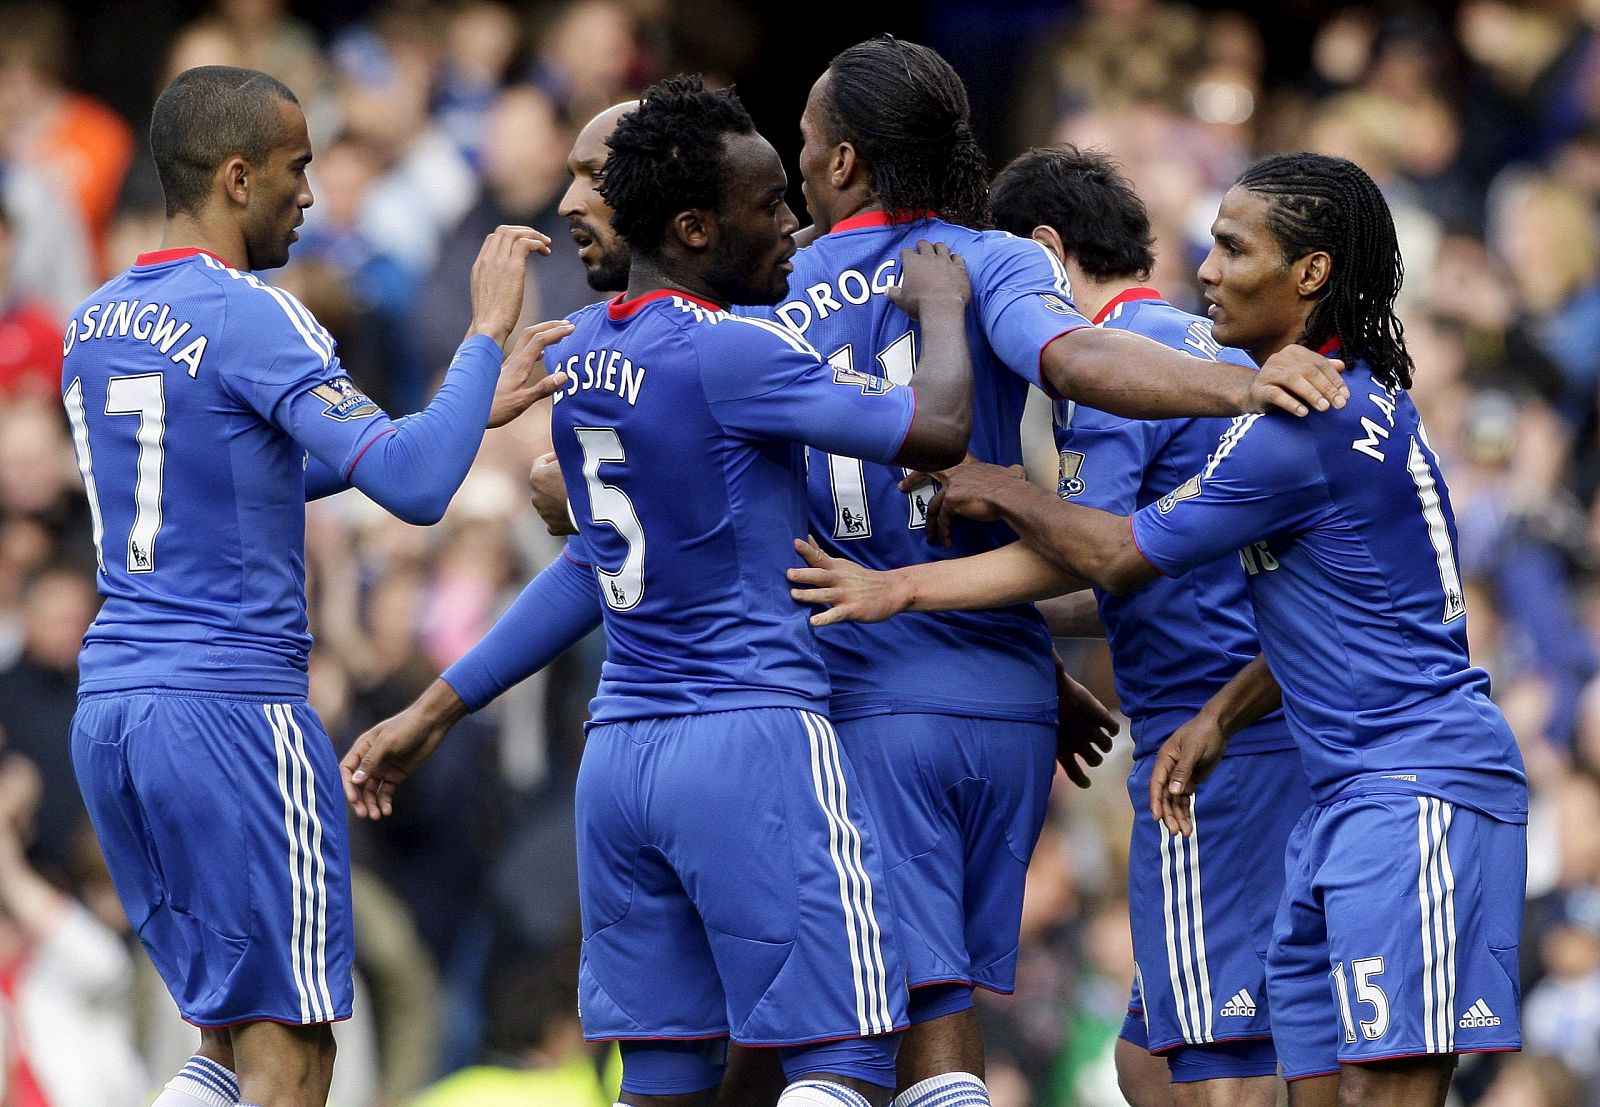 El Chelsea sigue líder de la Premier League inglesa